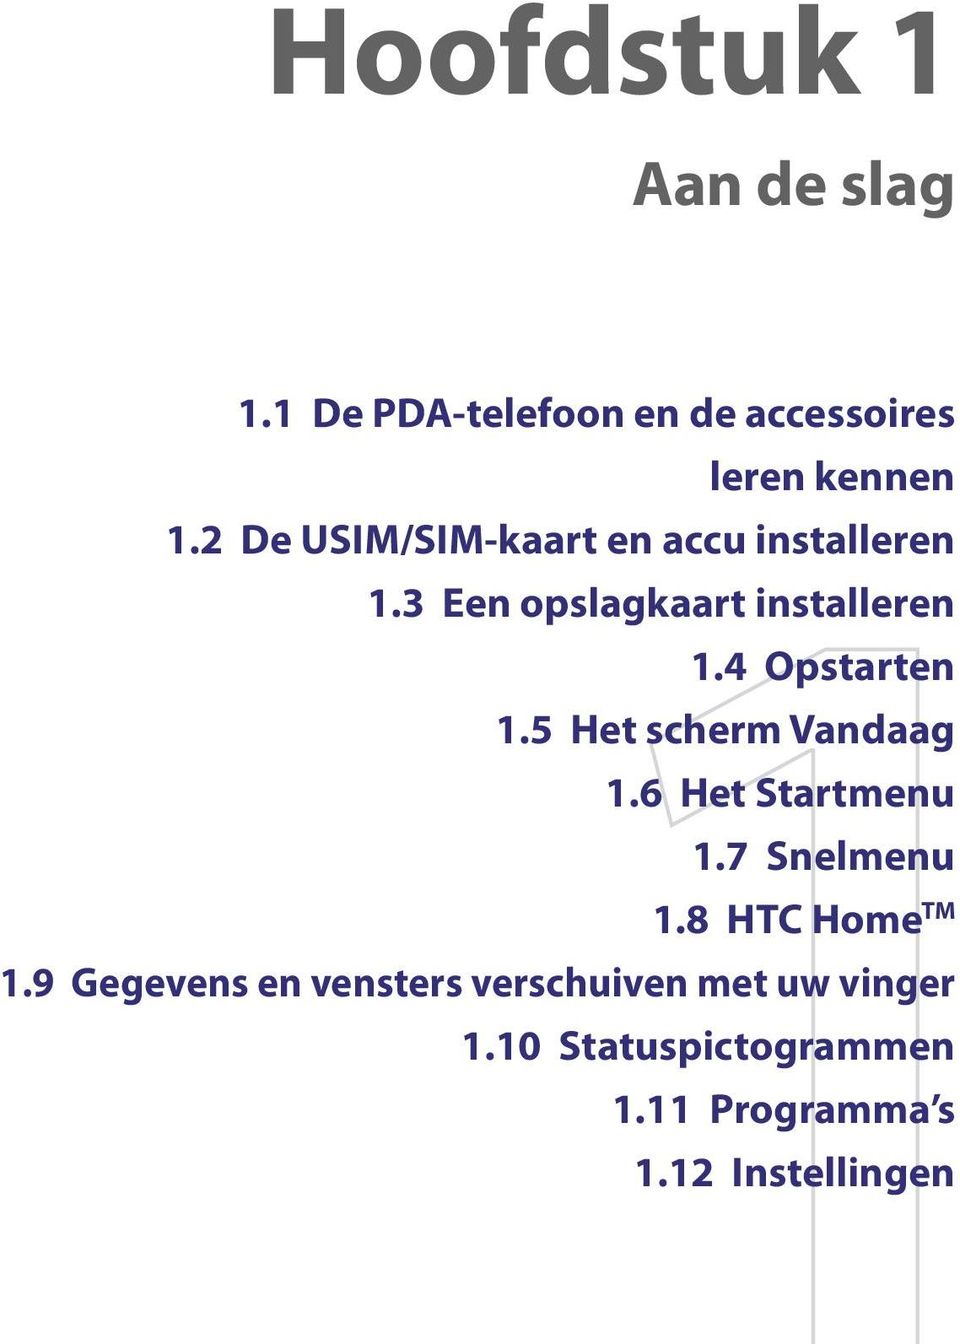 4 Opstarten 1.5 Het scherm Vandaag 1.6 Het Startmenu 1.7 Snelmenu 1.8 HTC Home TM 1.